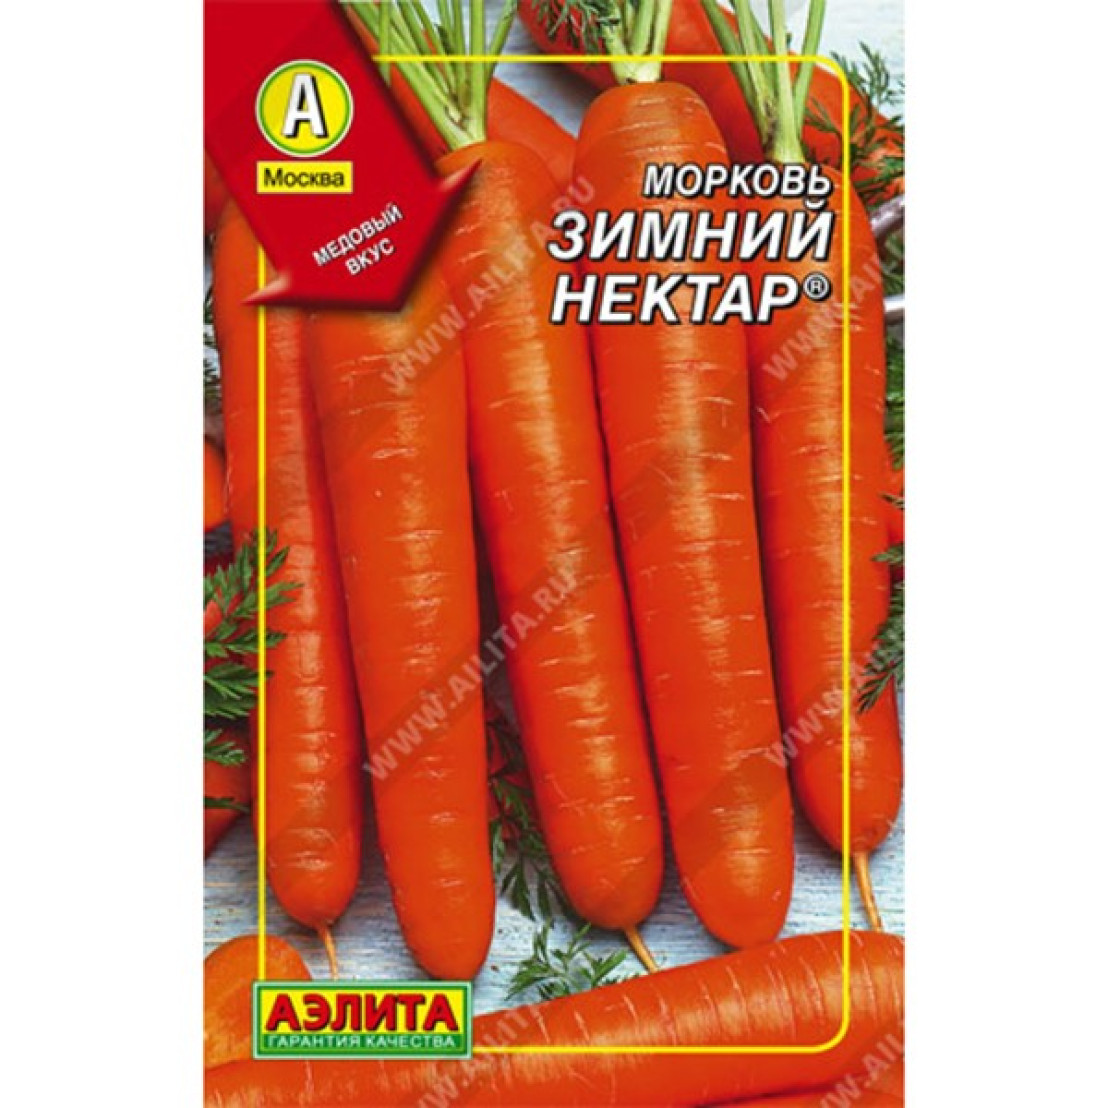 Морковь нектар. Морковь Нантская 4. Семена Гавриш морковь Нантская 4, гранулы 300 шт..